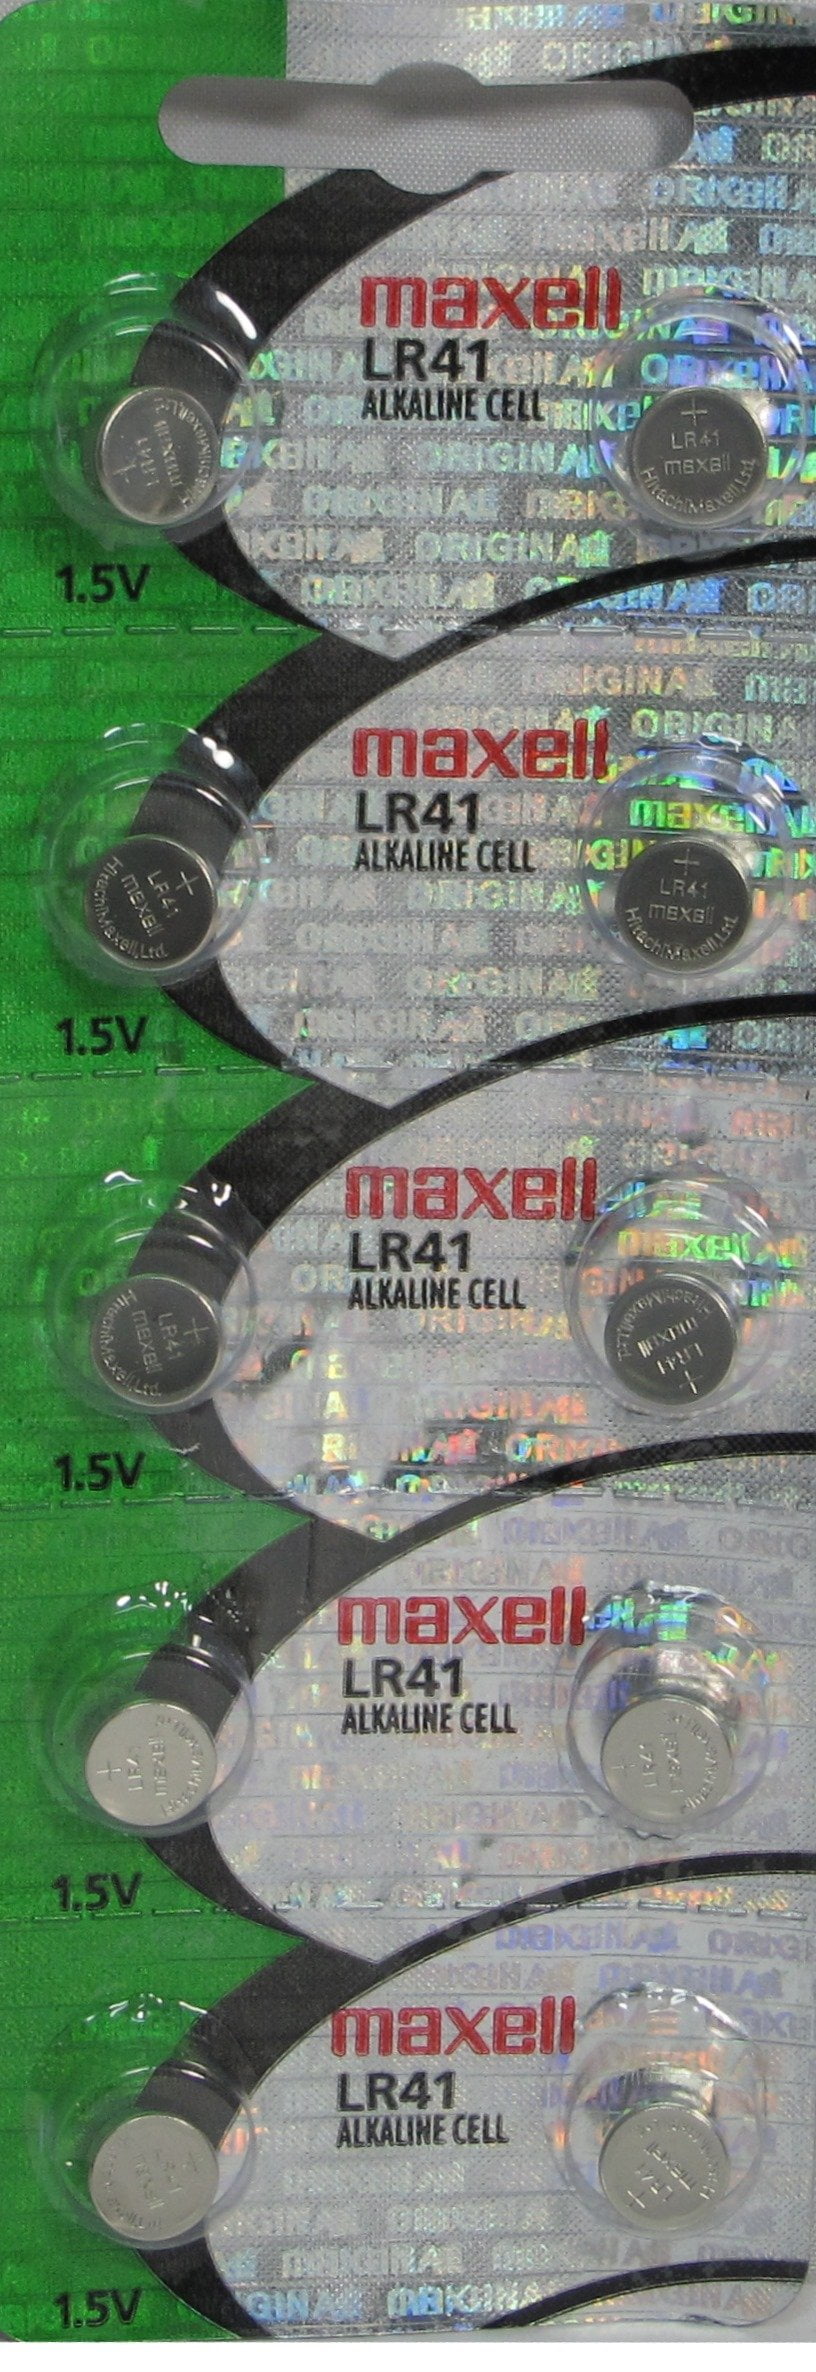 10 x Maxell LR41 /192 / AG3 / V3GA 1.5v Alkaline Button Cell Battery  Batteries - BRAND NEW